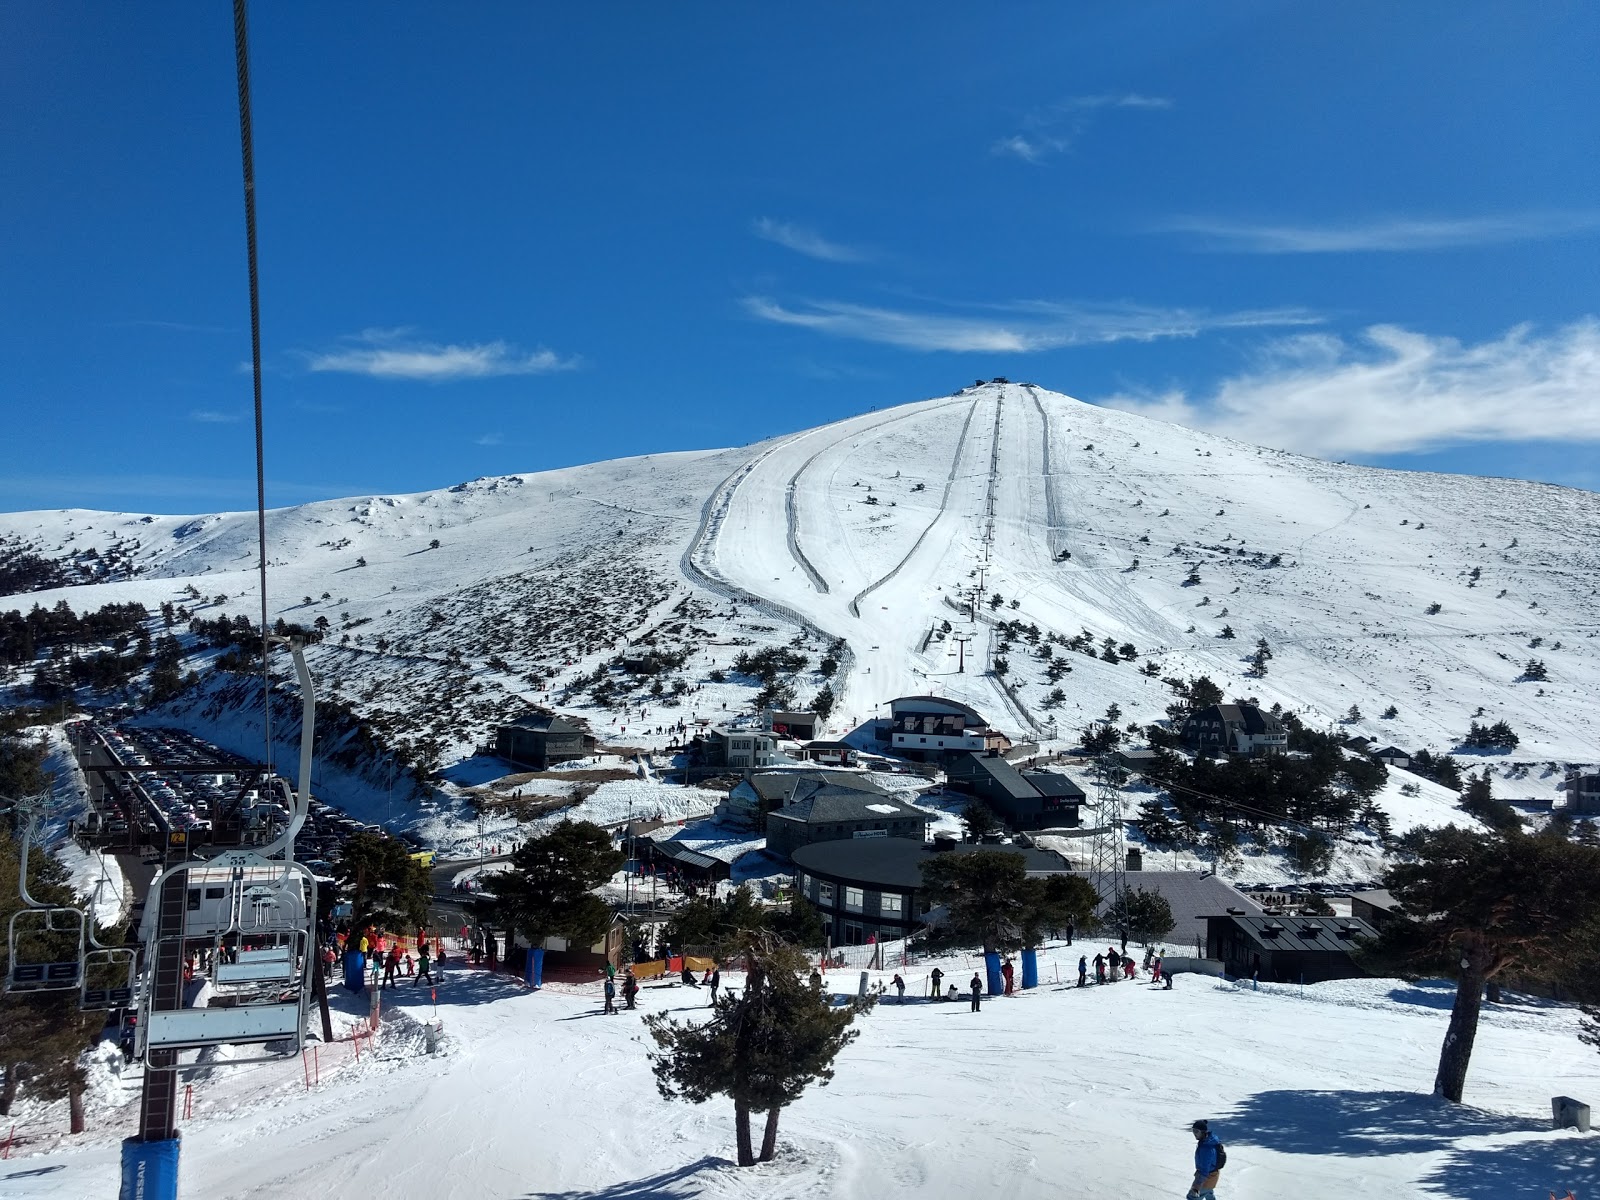 “Puerto de Navacerrada” Ski Station